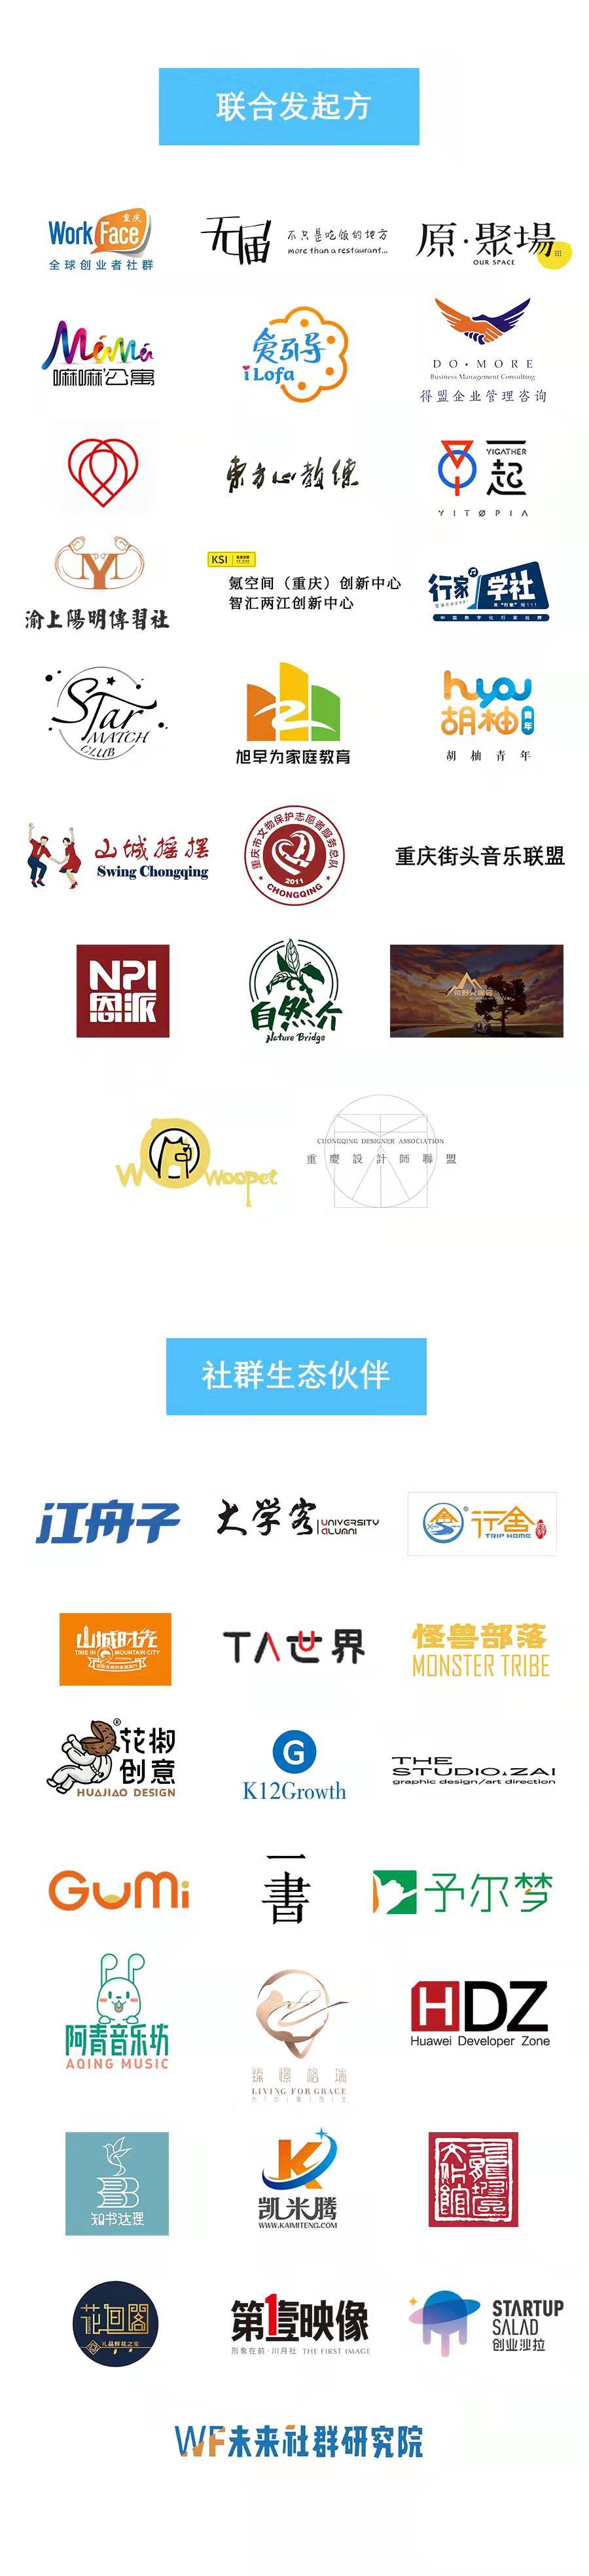 社群大会logo墙.jpg